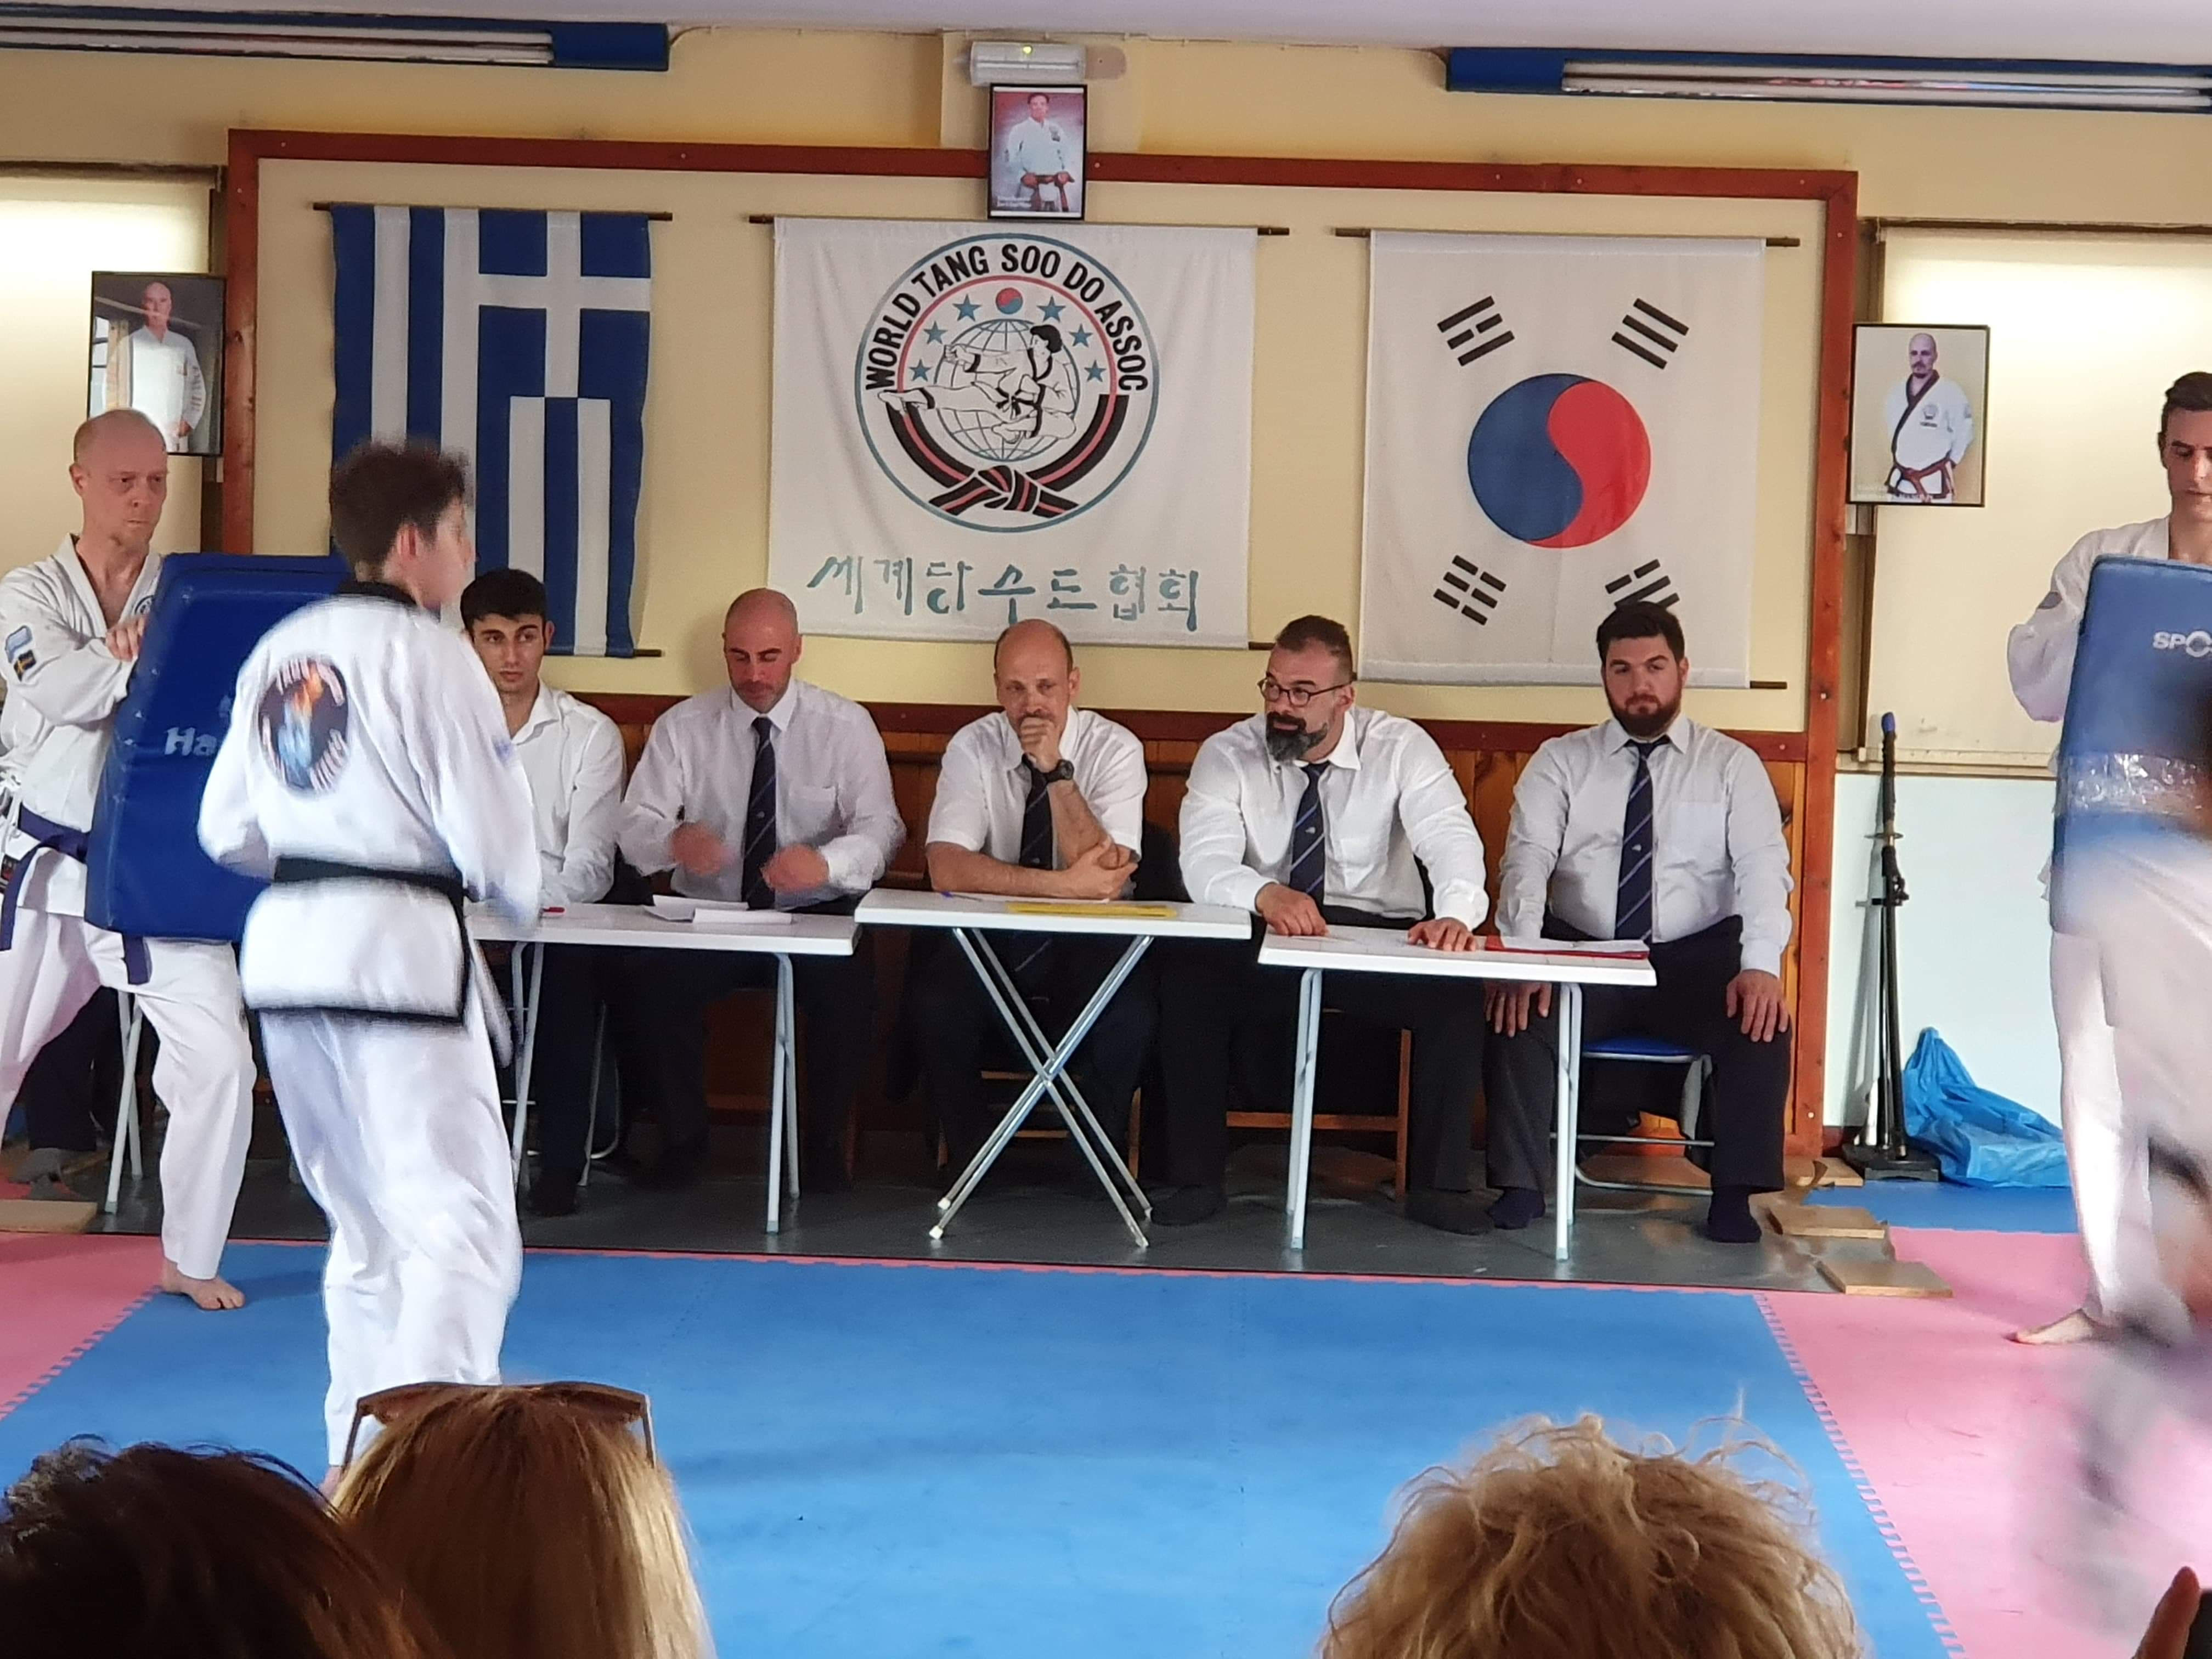 Με επιτυχία διεξήχθη στις 31 Μαΐου το Black belt test 